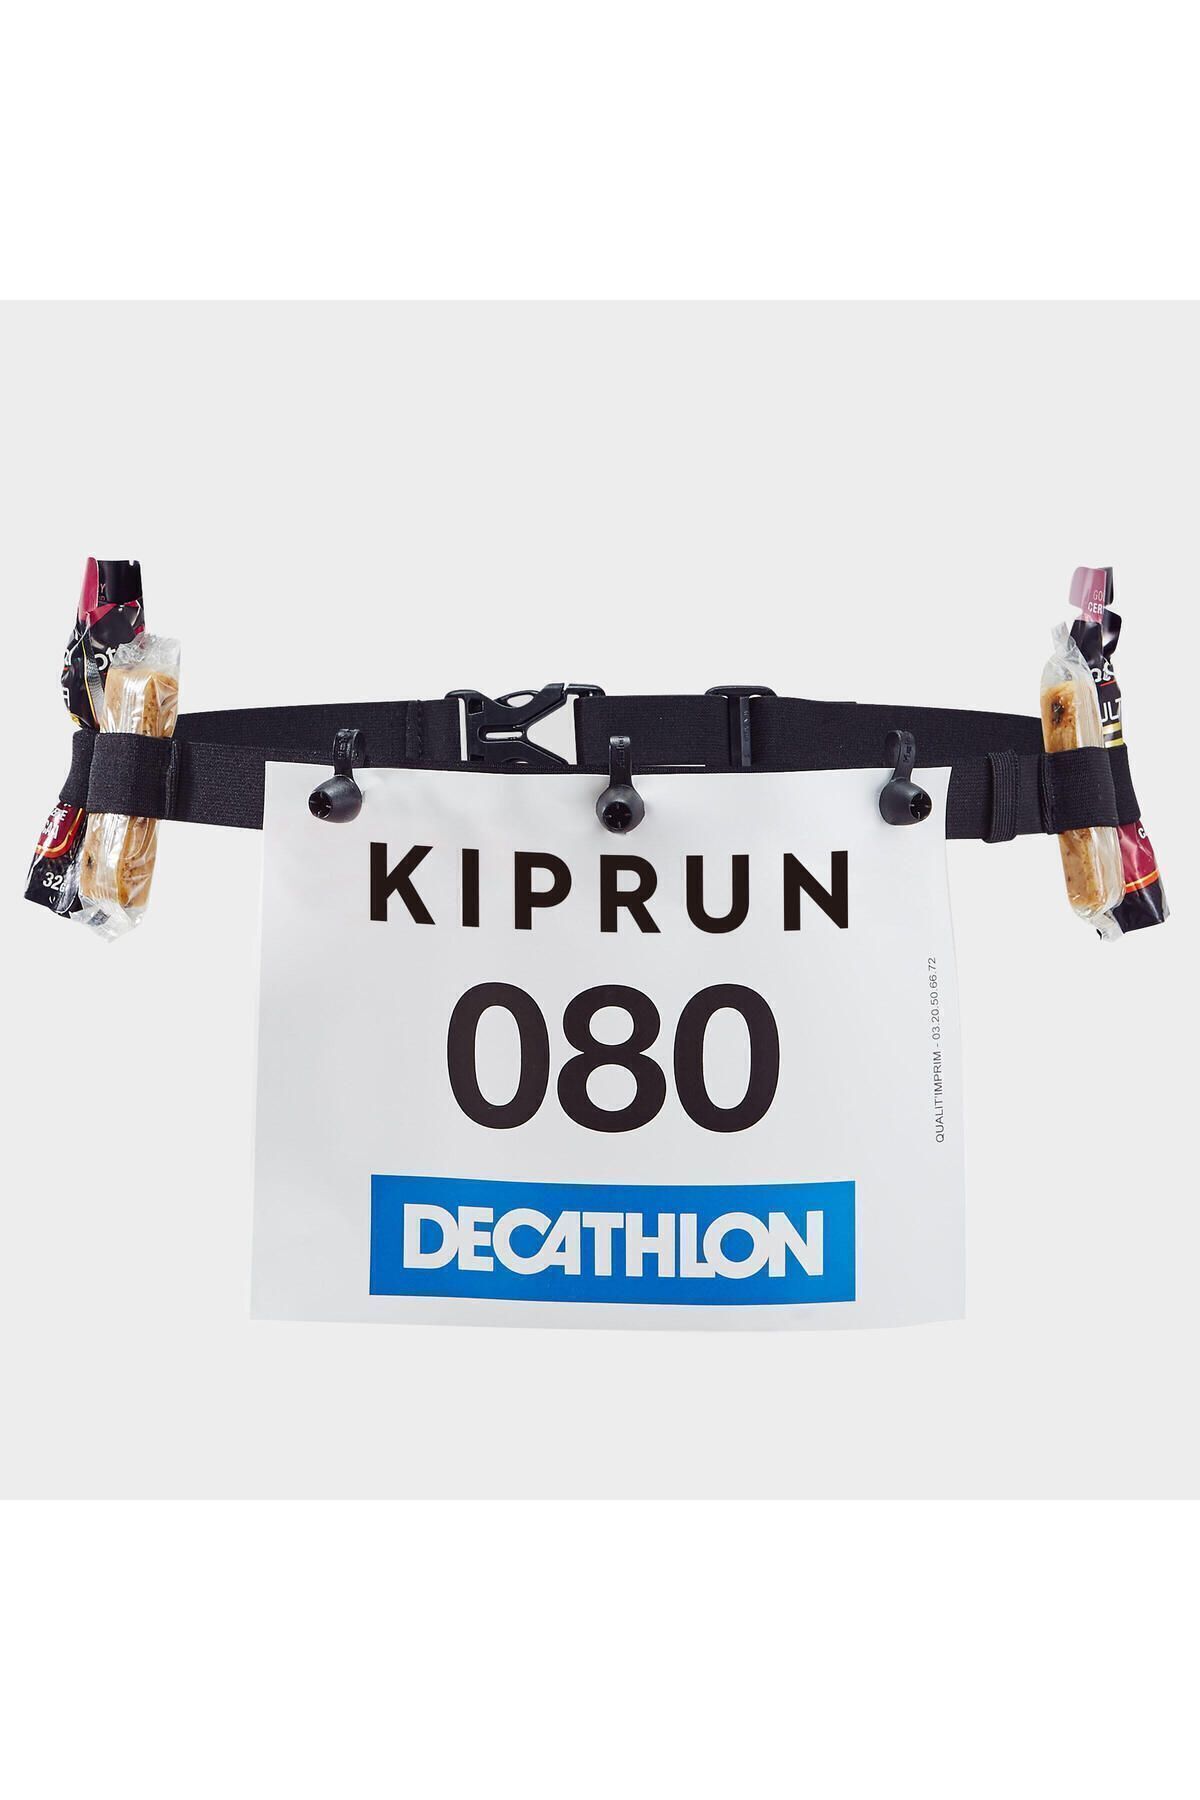 Decathlon Kiprun Siyah Koşu Yarış Numarası Taşıma Kemeri